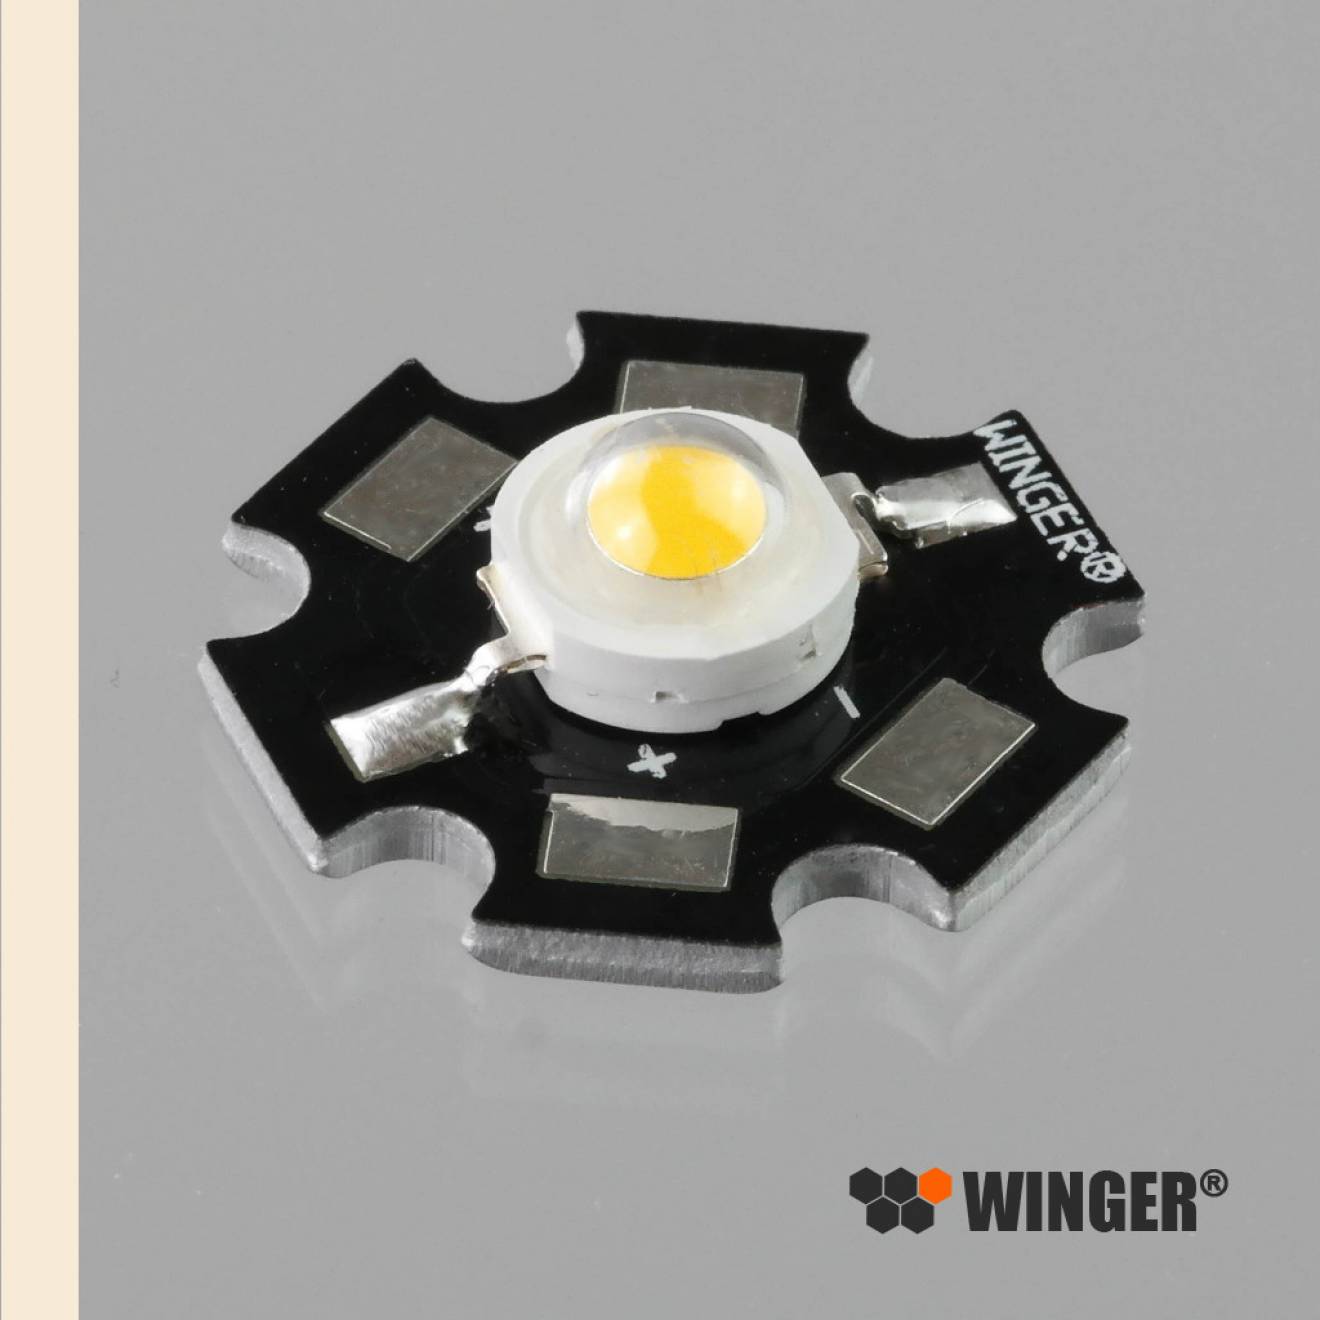 WINGER® WEPWW1-S1 Power LED Star warmweiß (2.800K - 3.000K) 1W - 90 Lumen